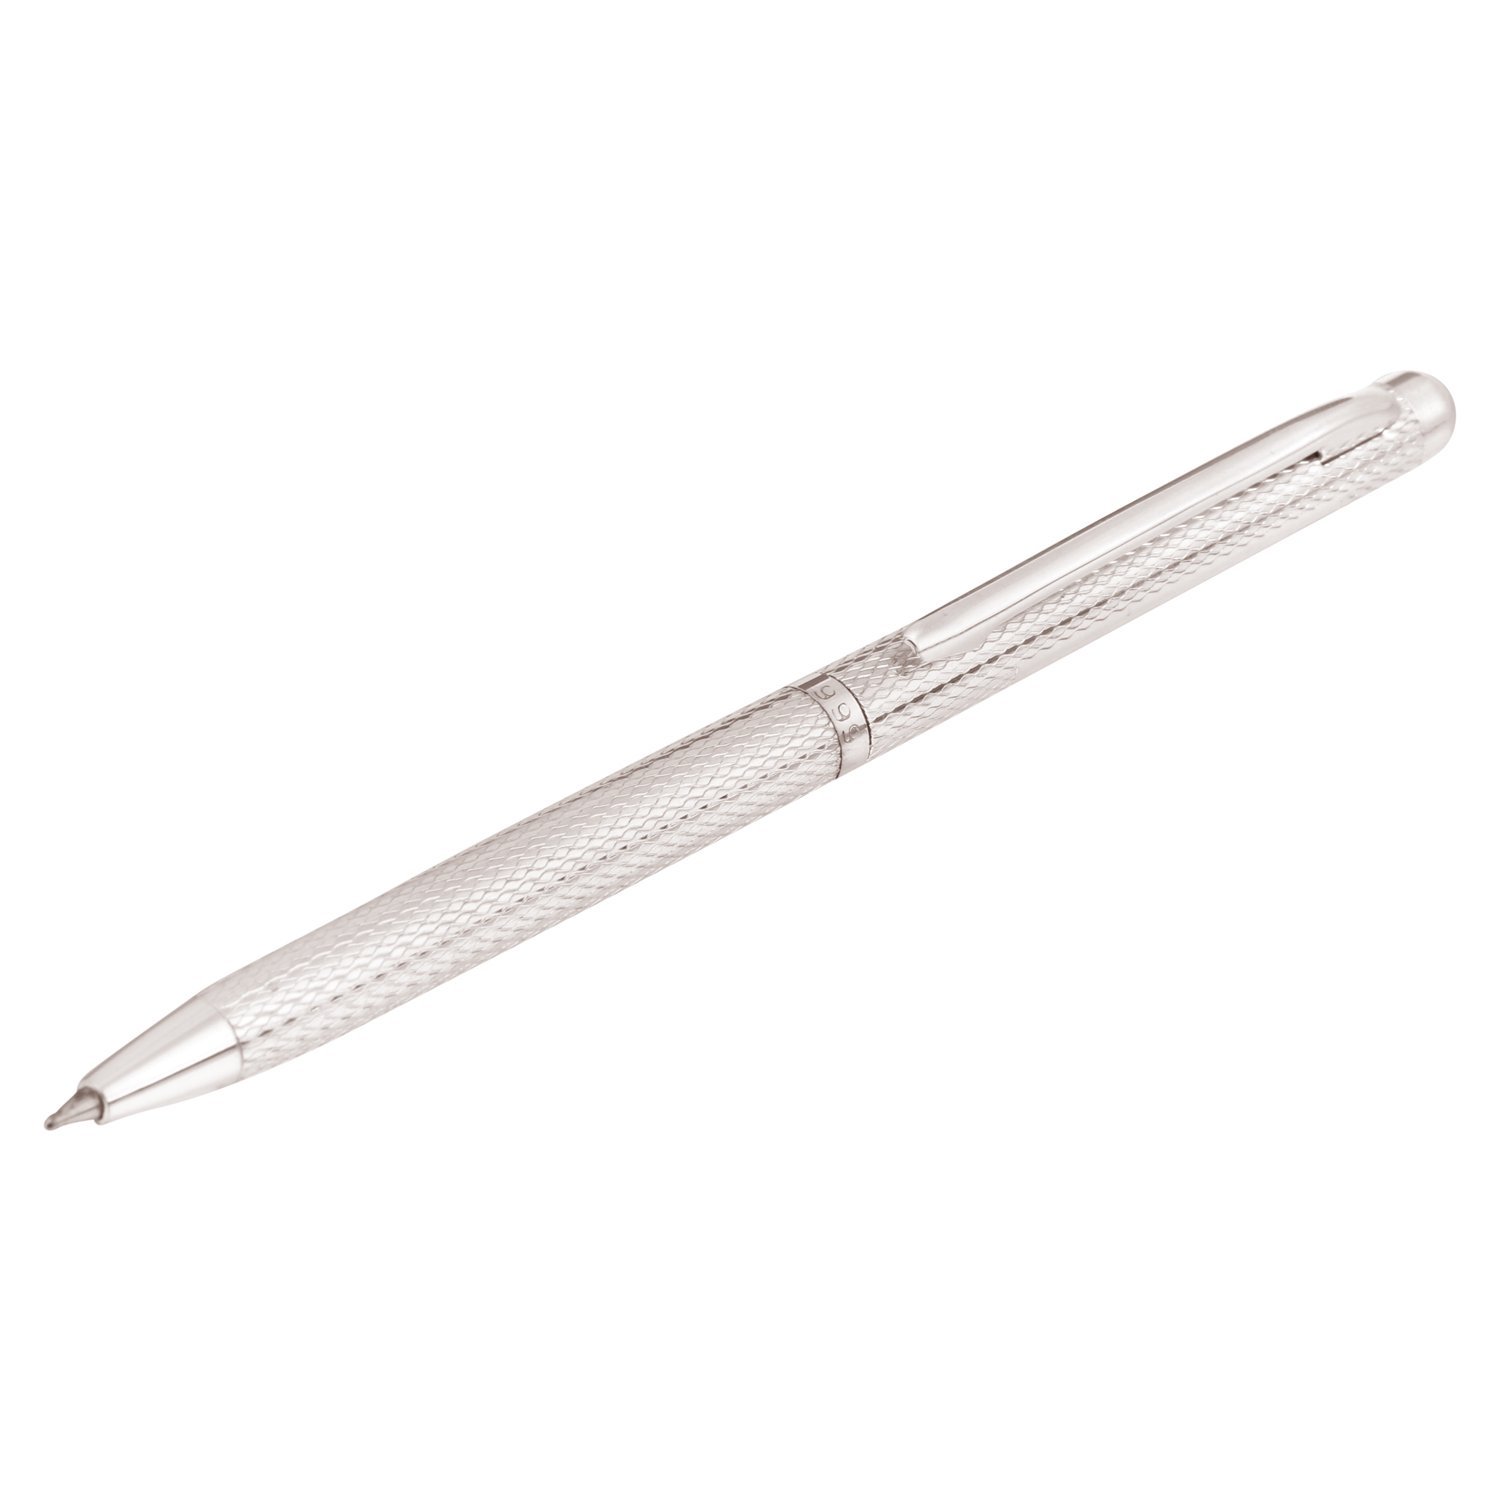 Fine Silver Ballpoint Pen by Osasbazaar